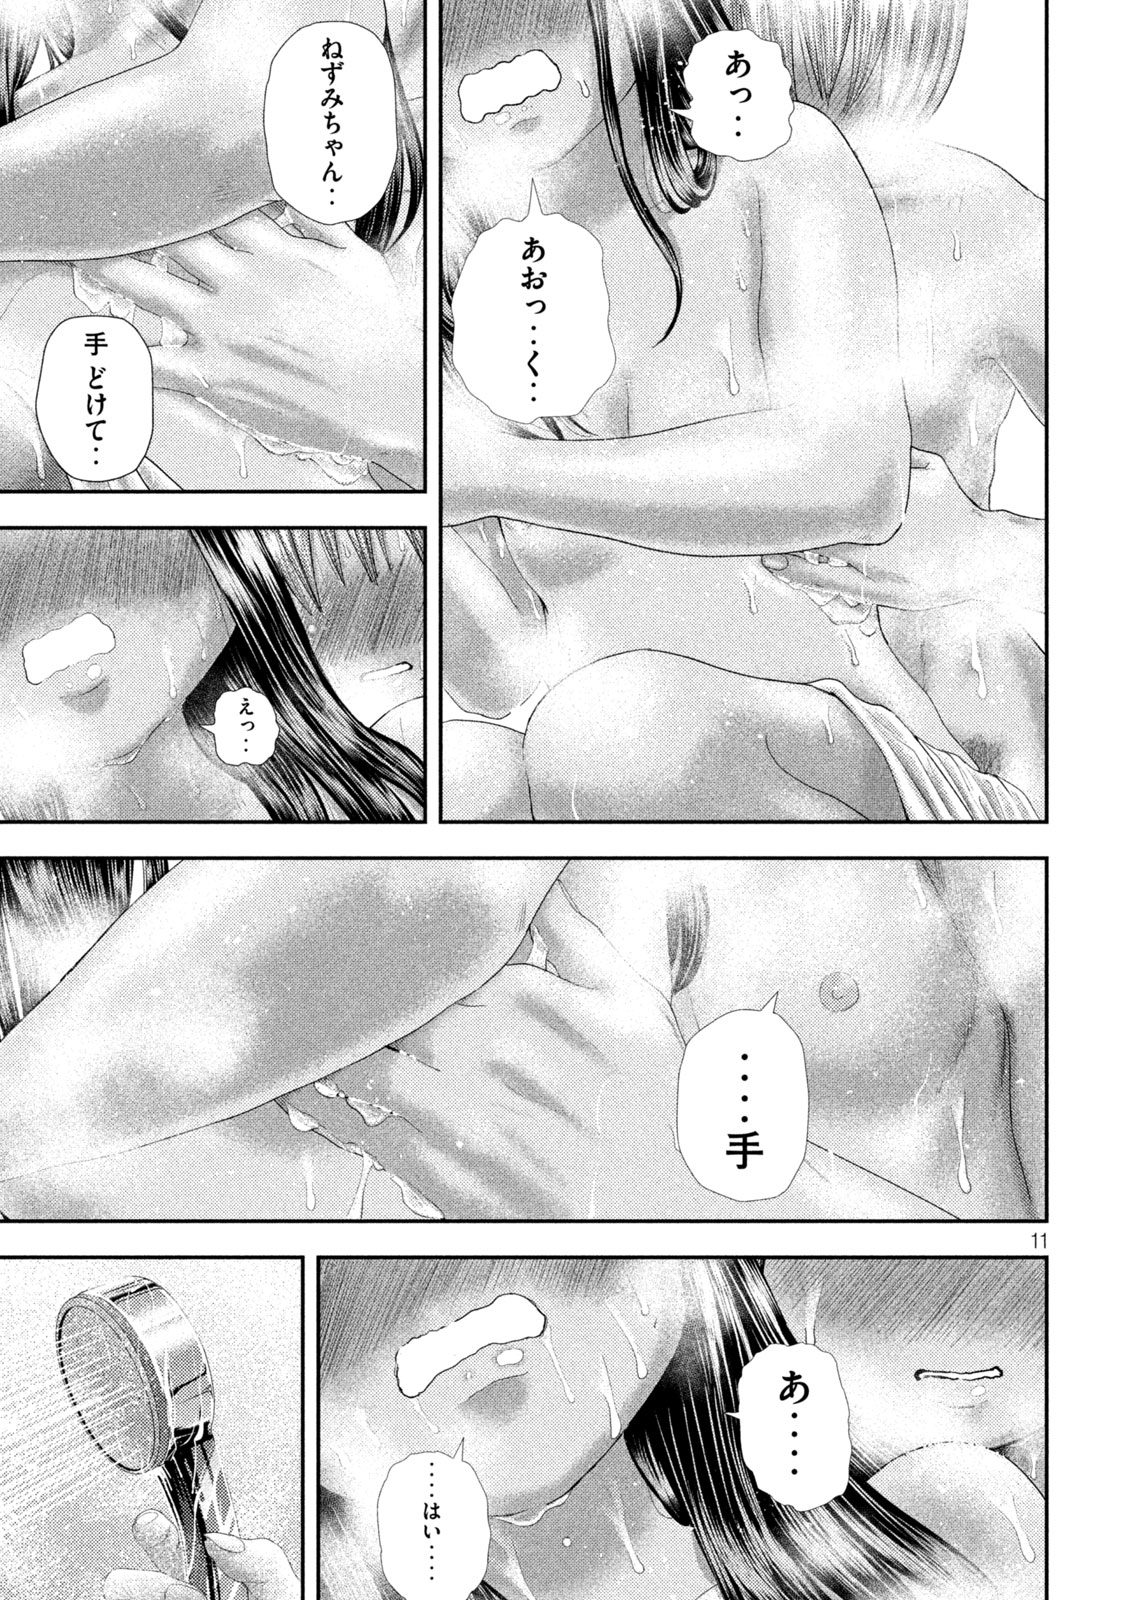 Nezumi no Koi - Chapter 28 - Page 11